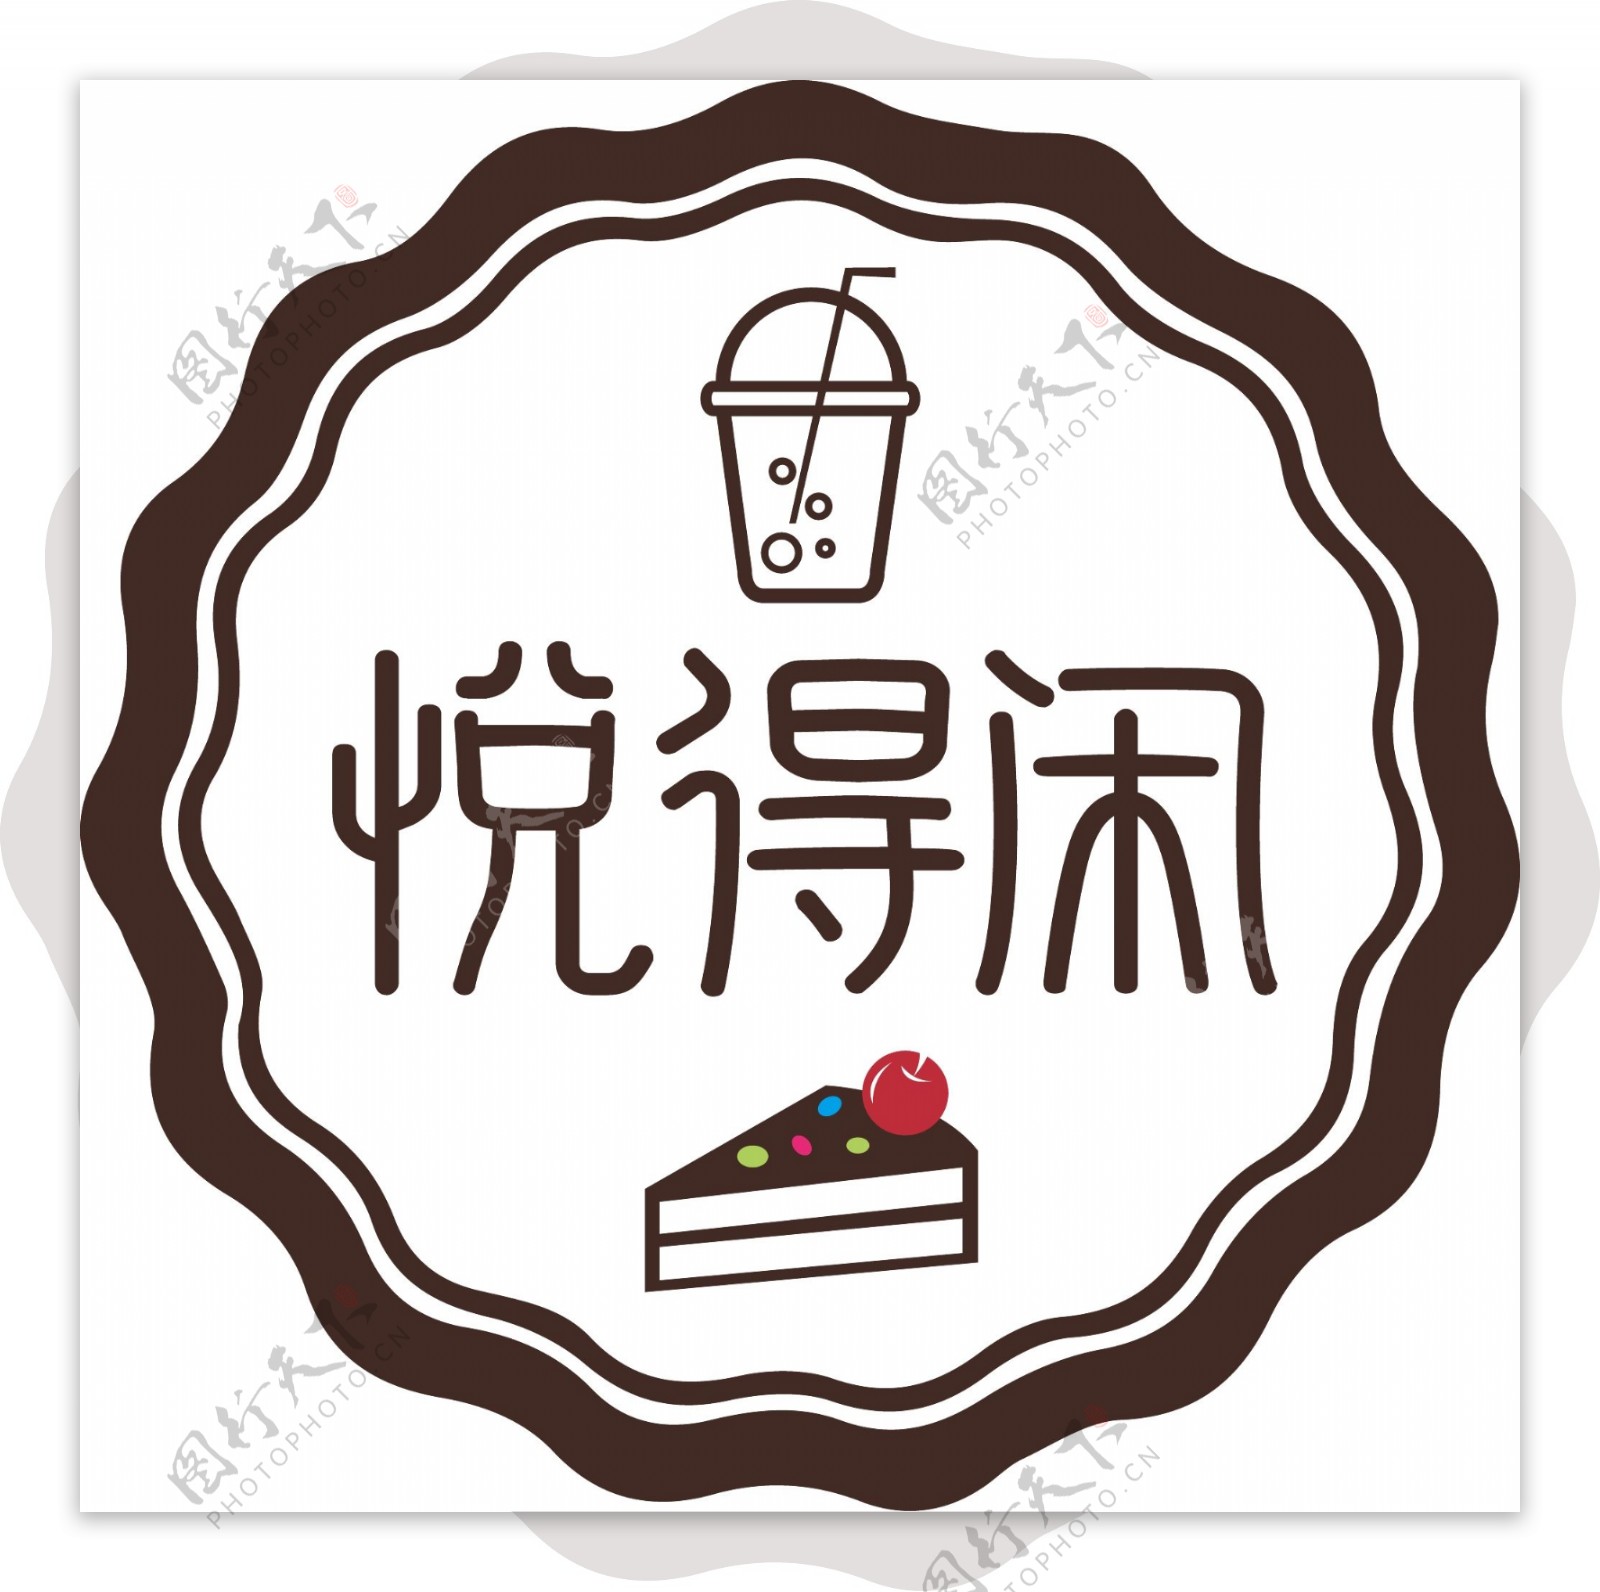 奶茶标识设计图片